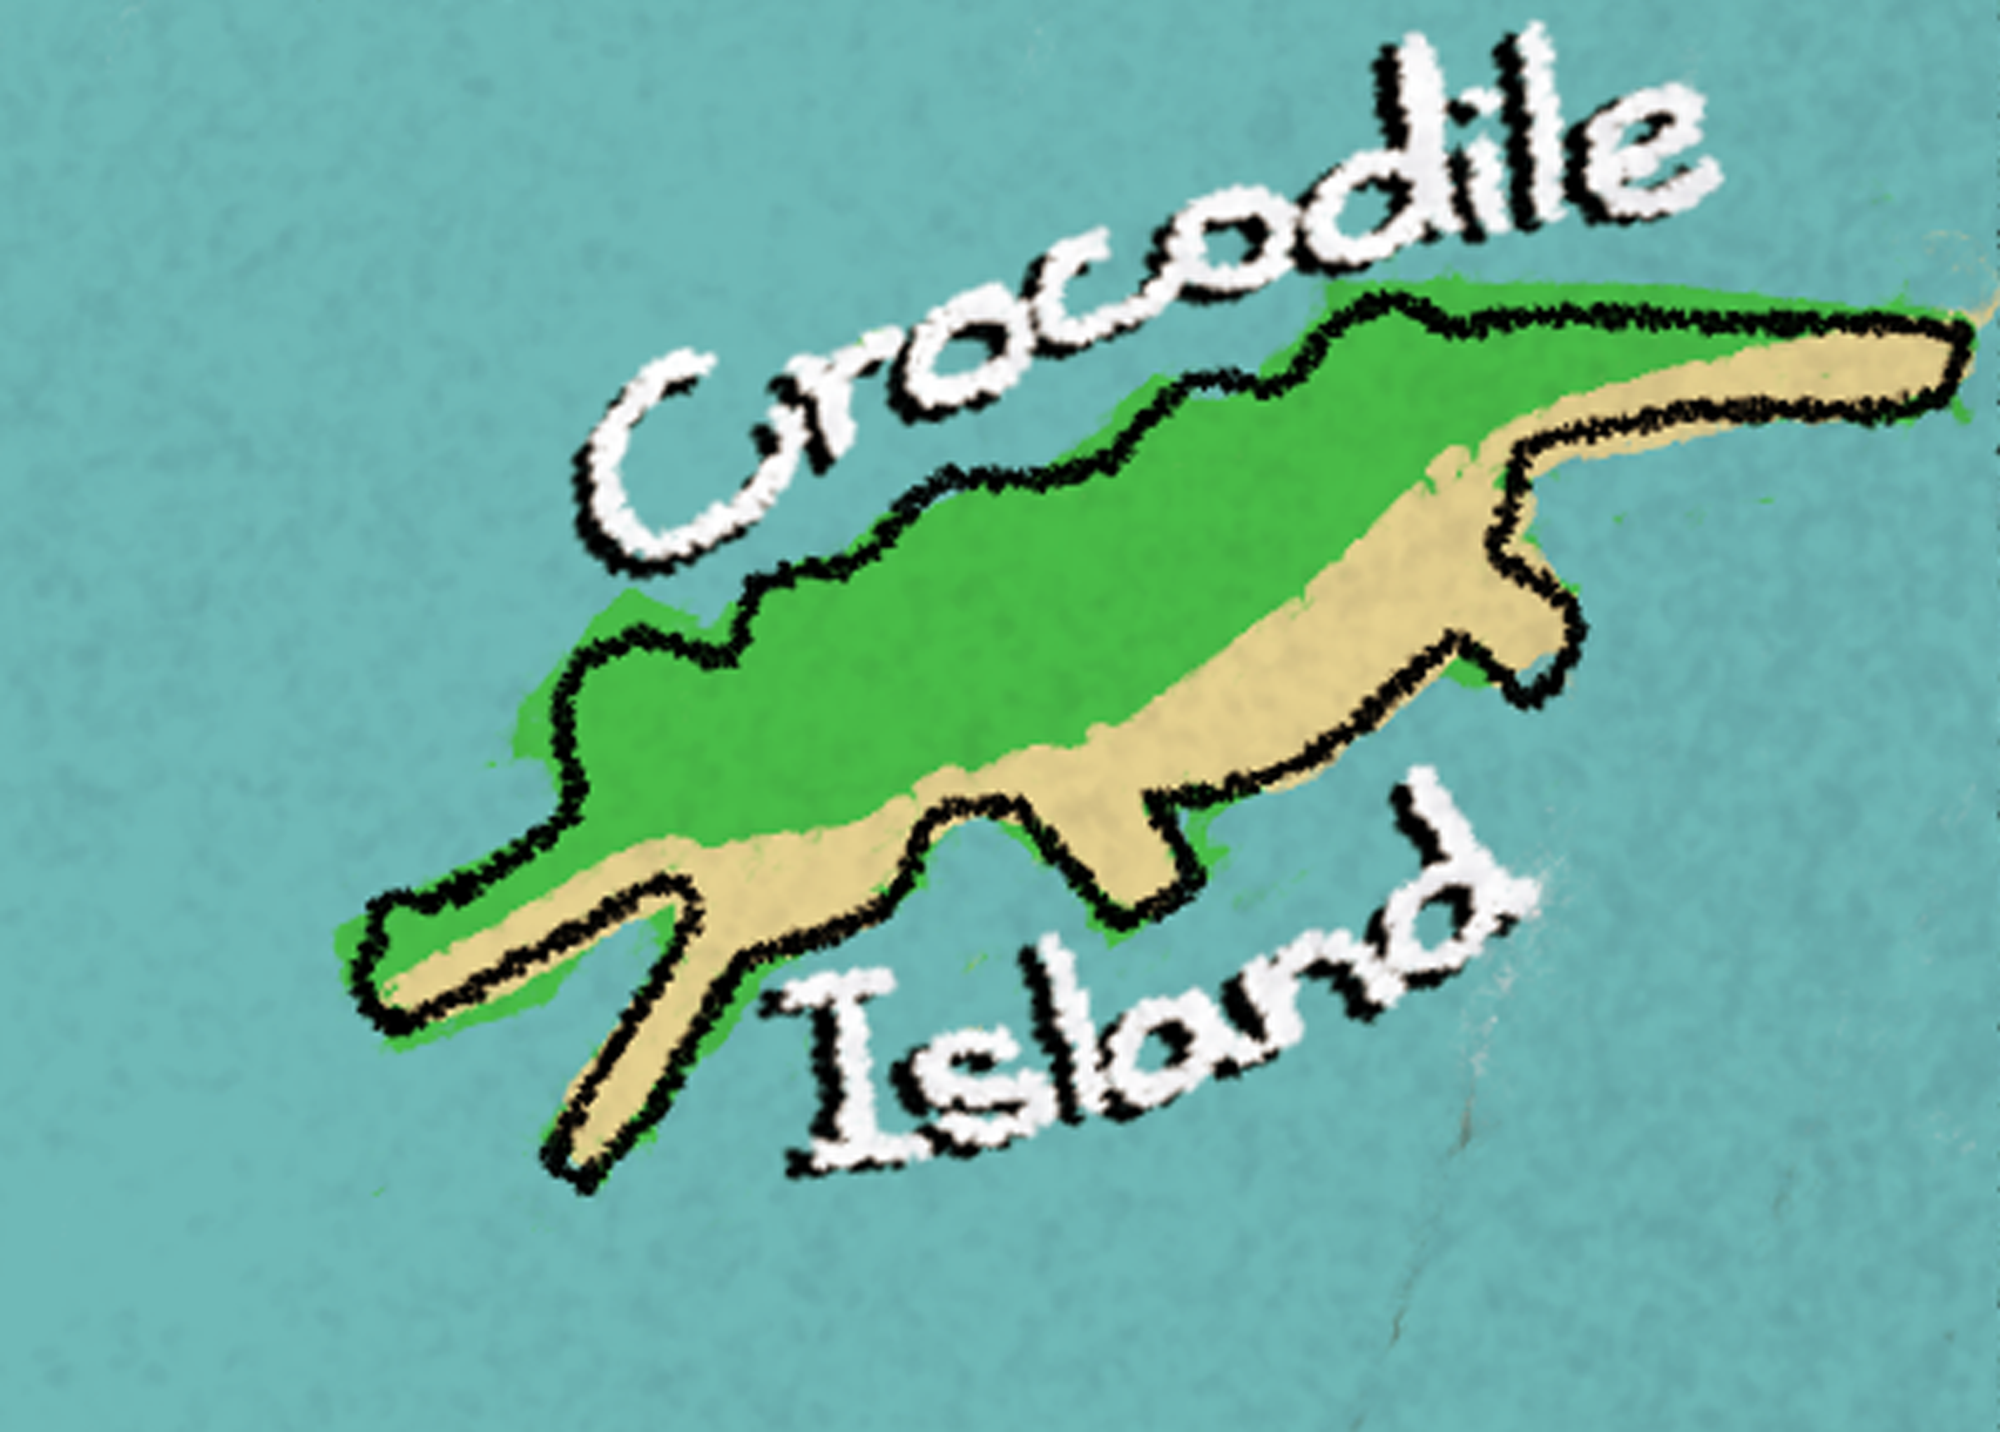 Crocodile Island